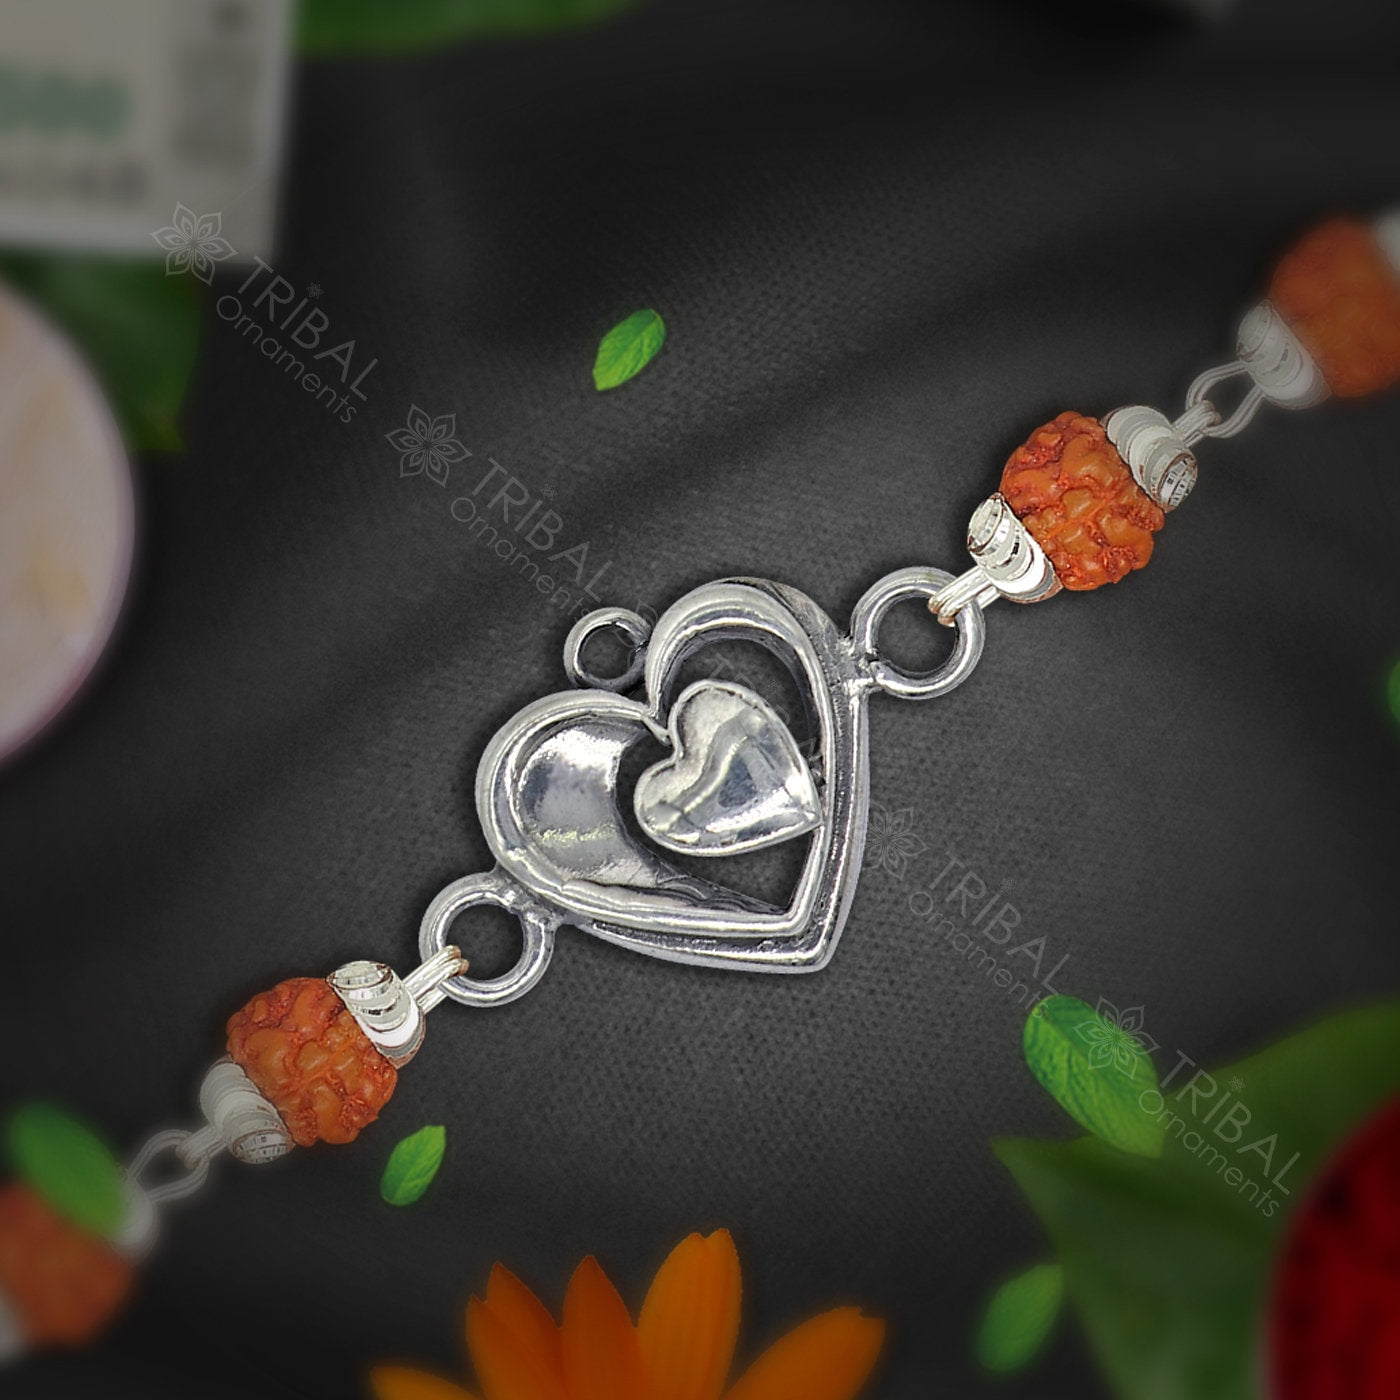 Amazing love pendant 925 sterling silver Rakhi bracelet in rudraksh/black basil/white basil and silver beaded chain rk284 - TRIBAL ORNAMENTS